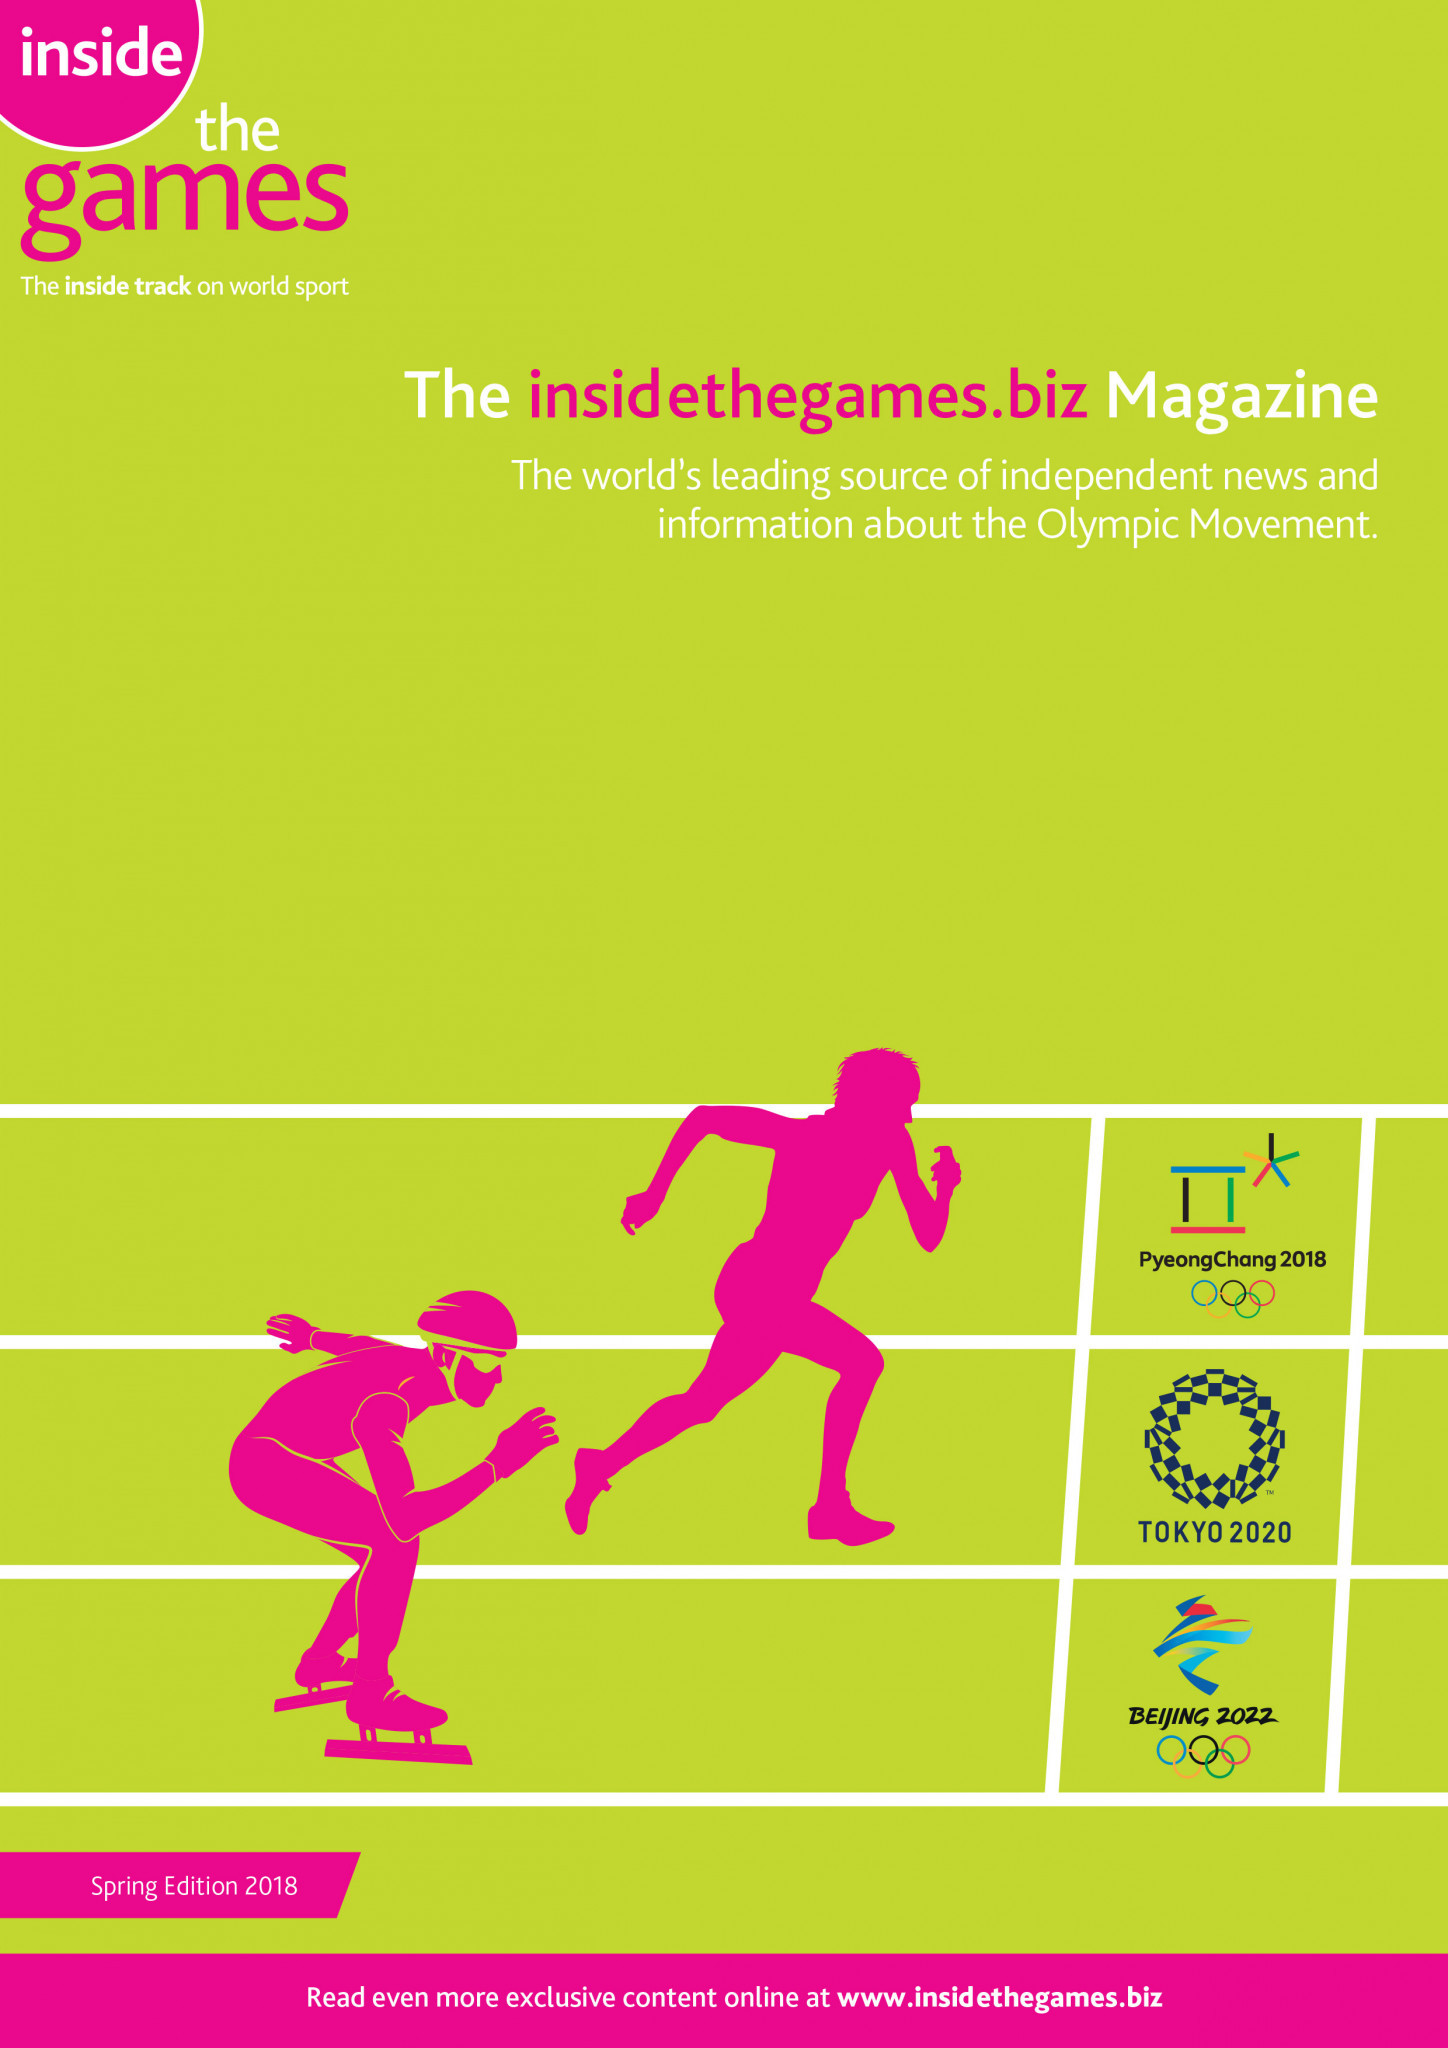 The insidethegames.biz Magazine Spring Edition 2018